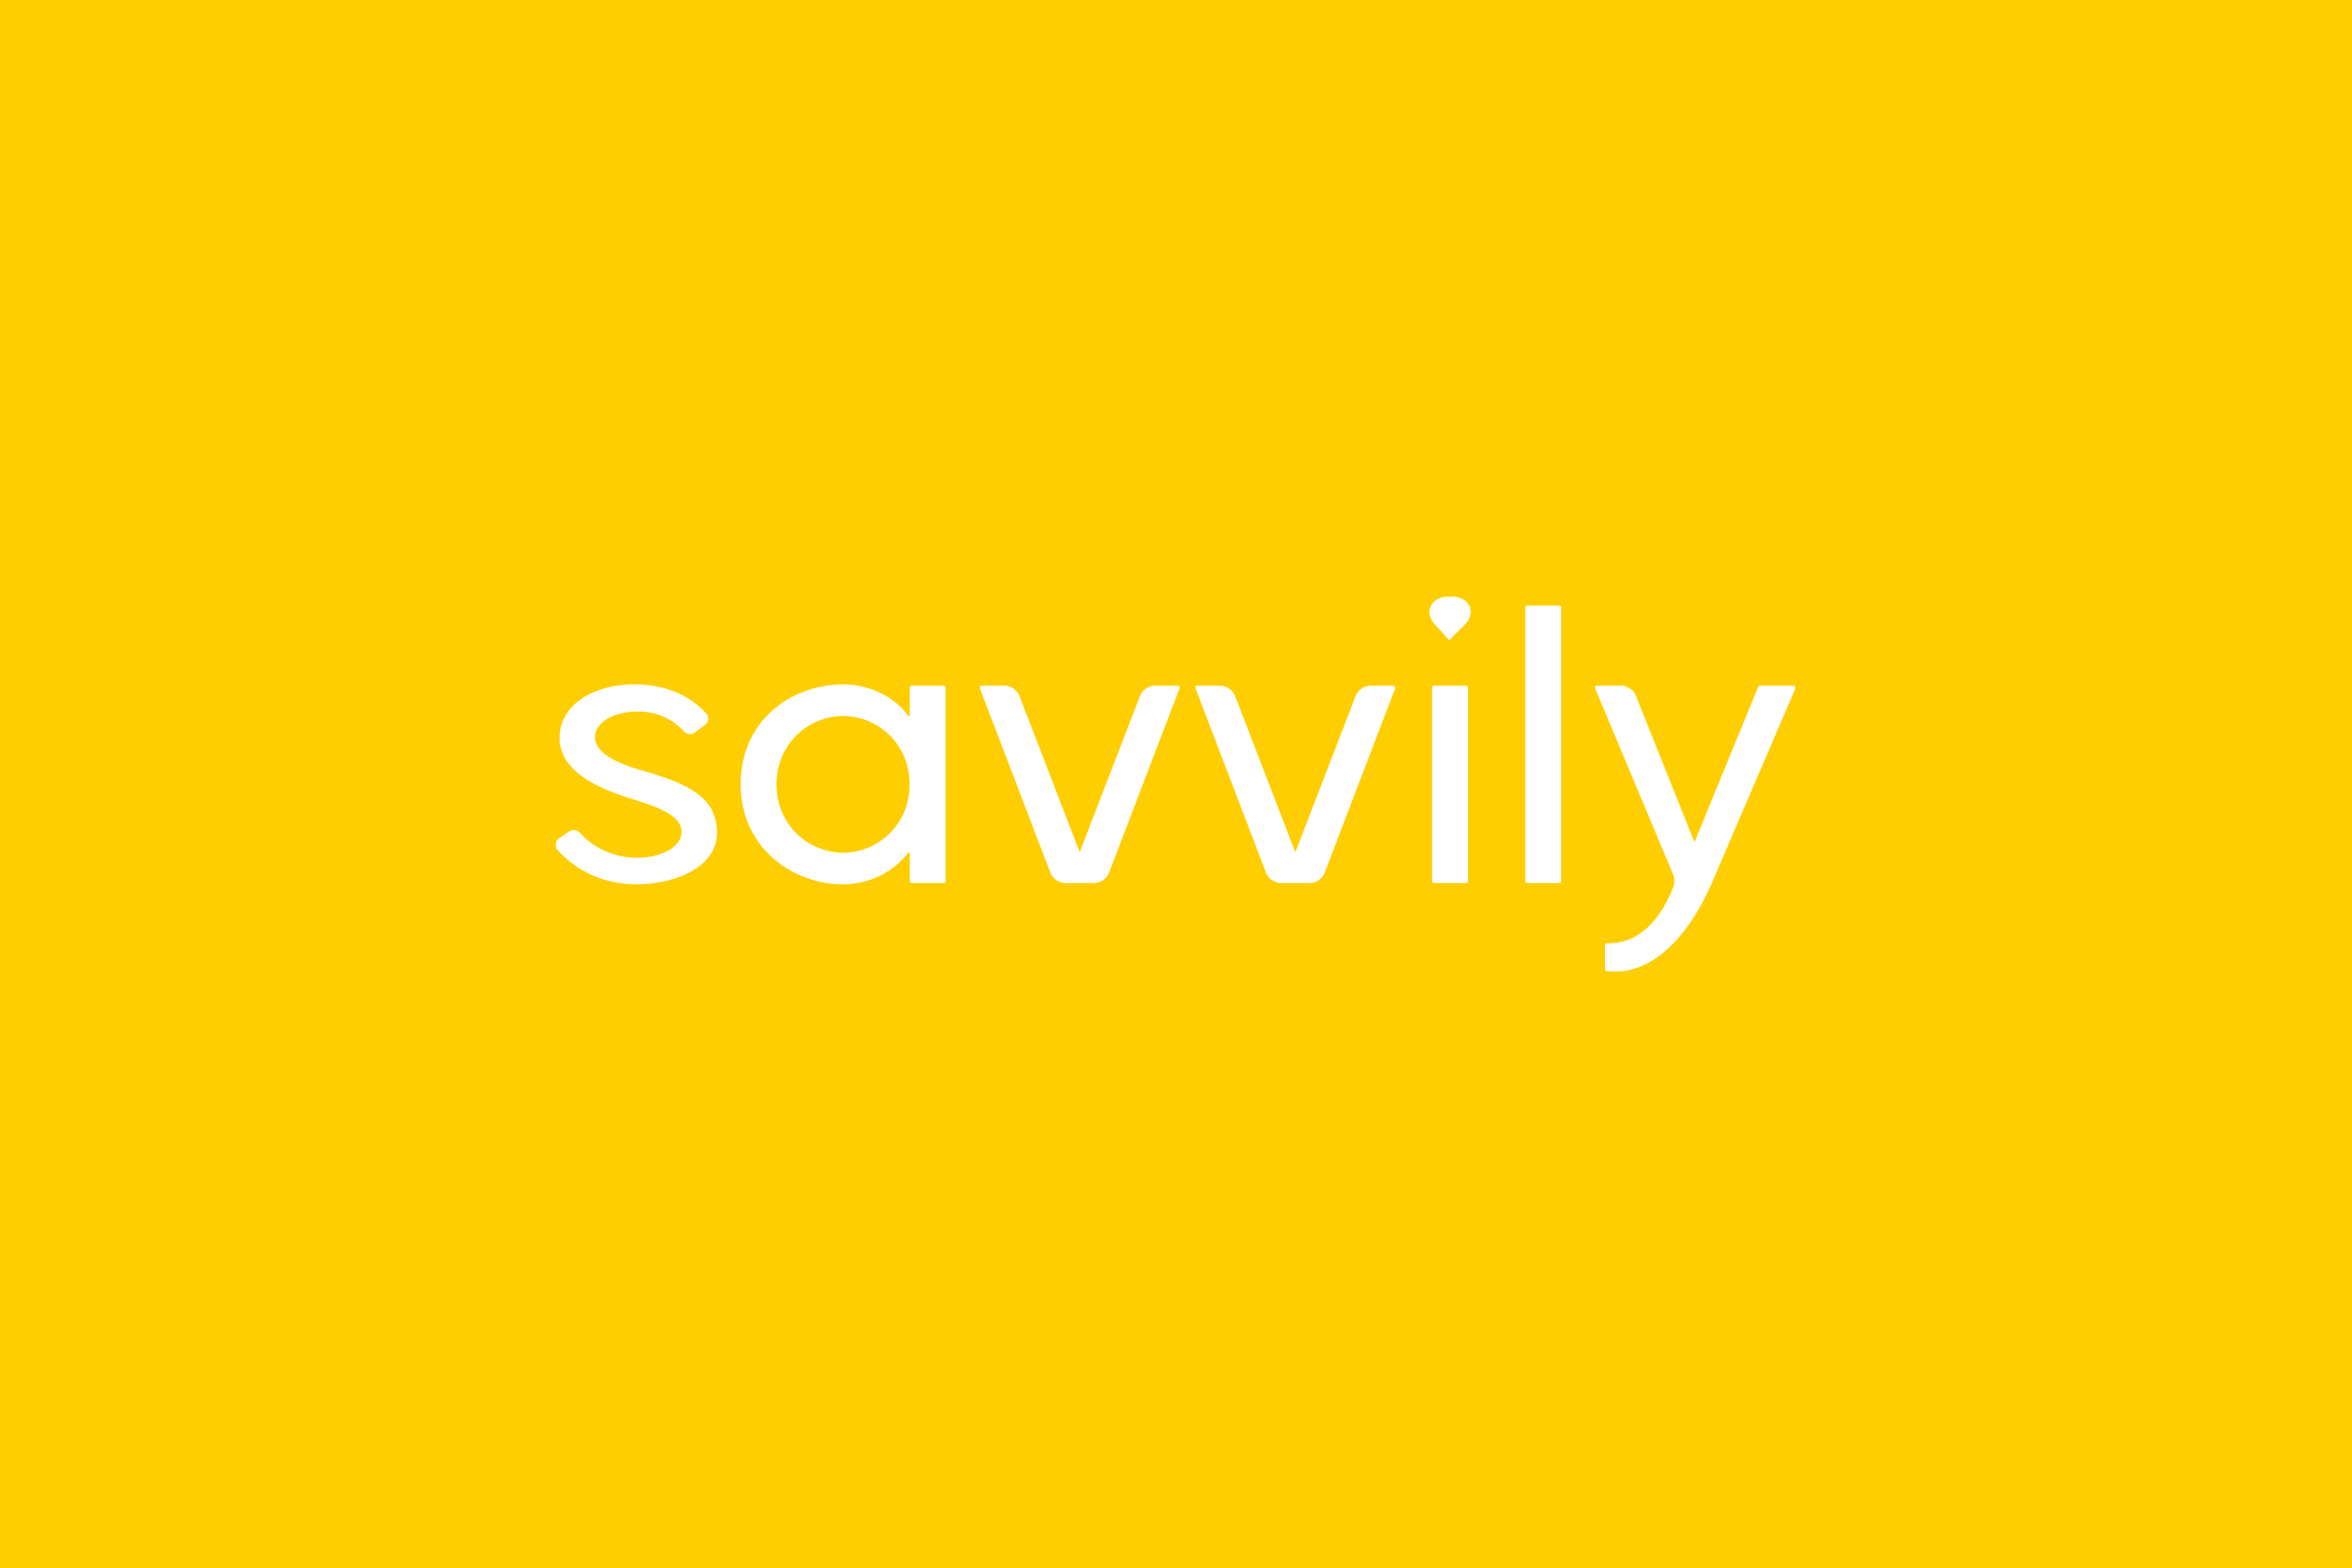 Logo savvily con fondo amarillo